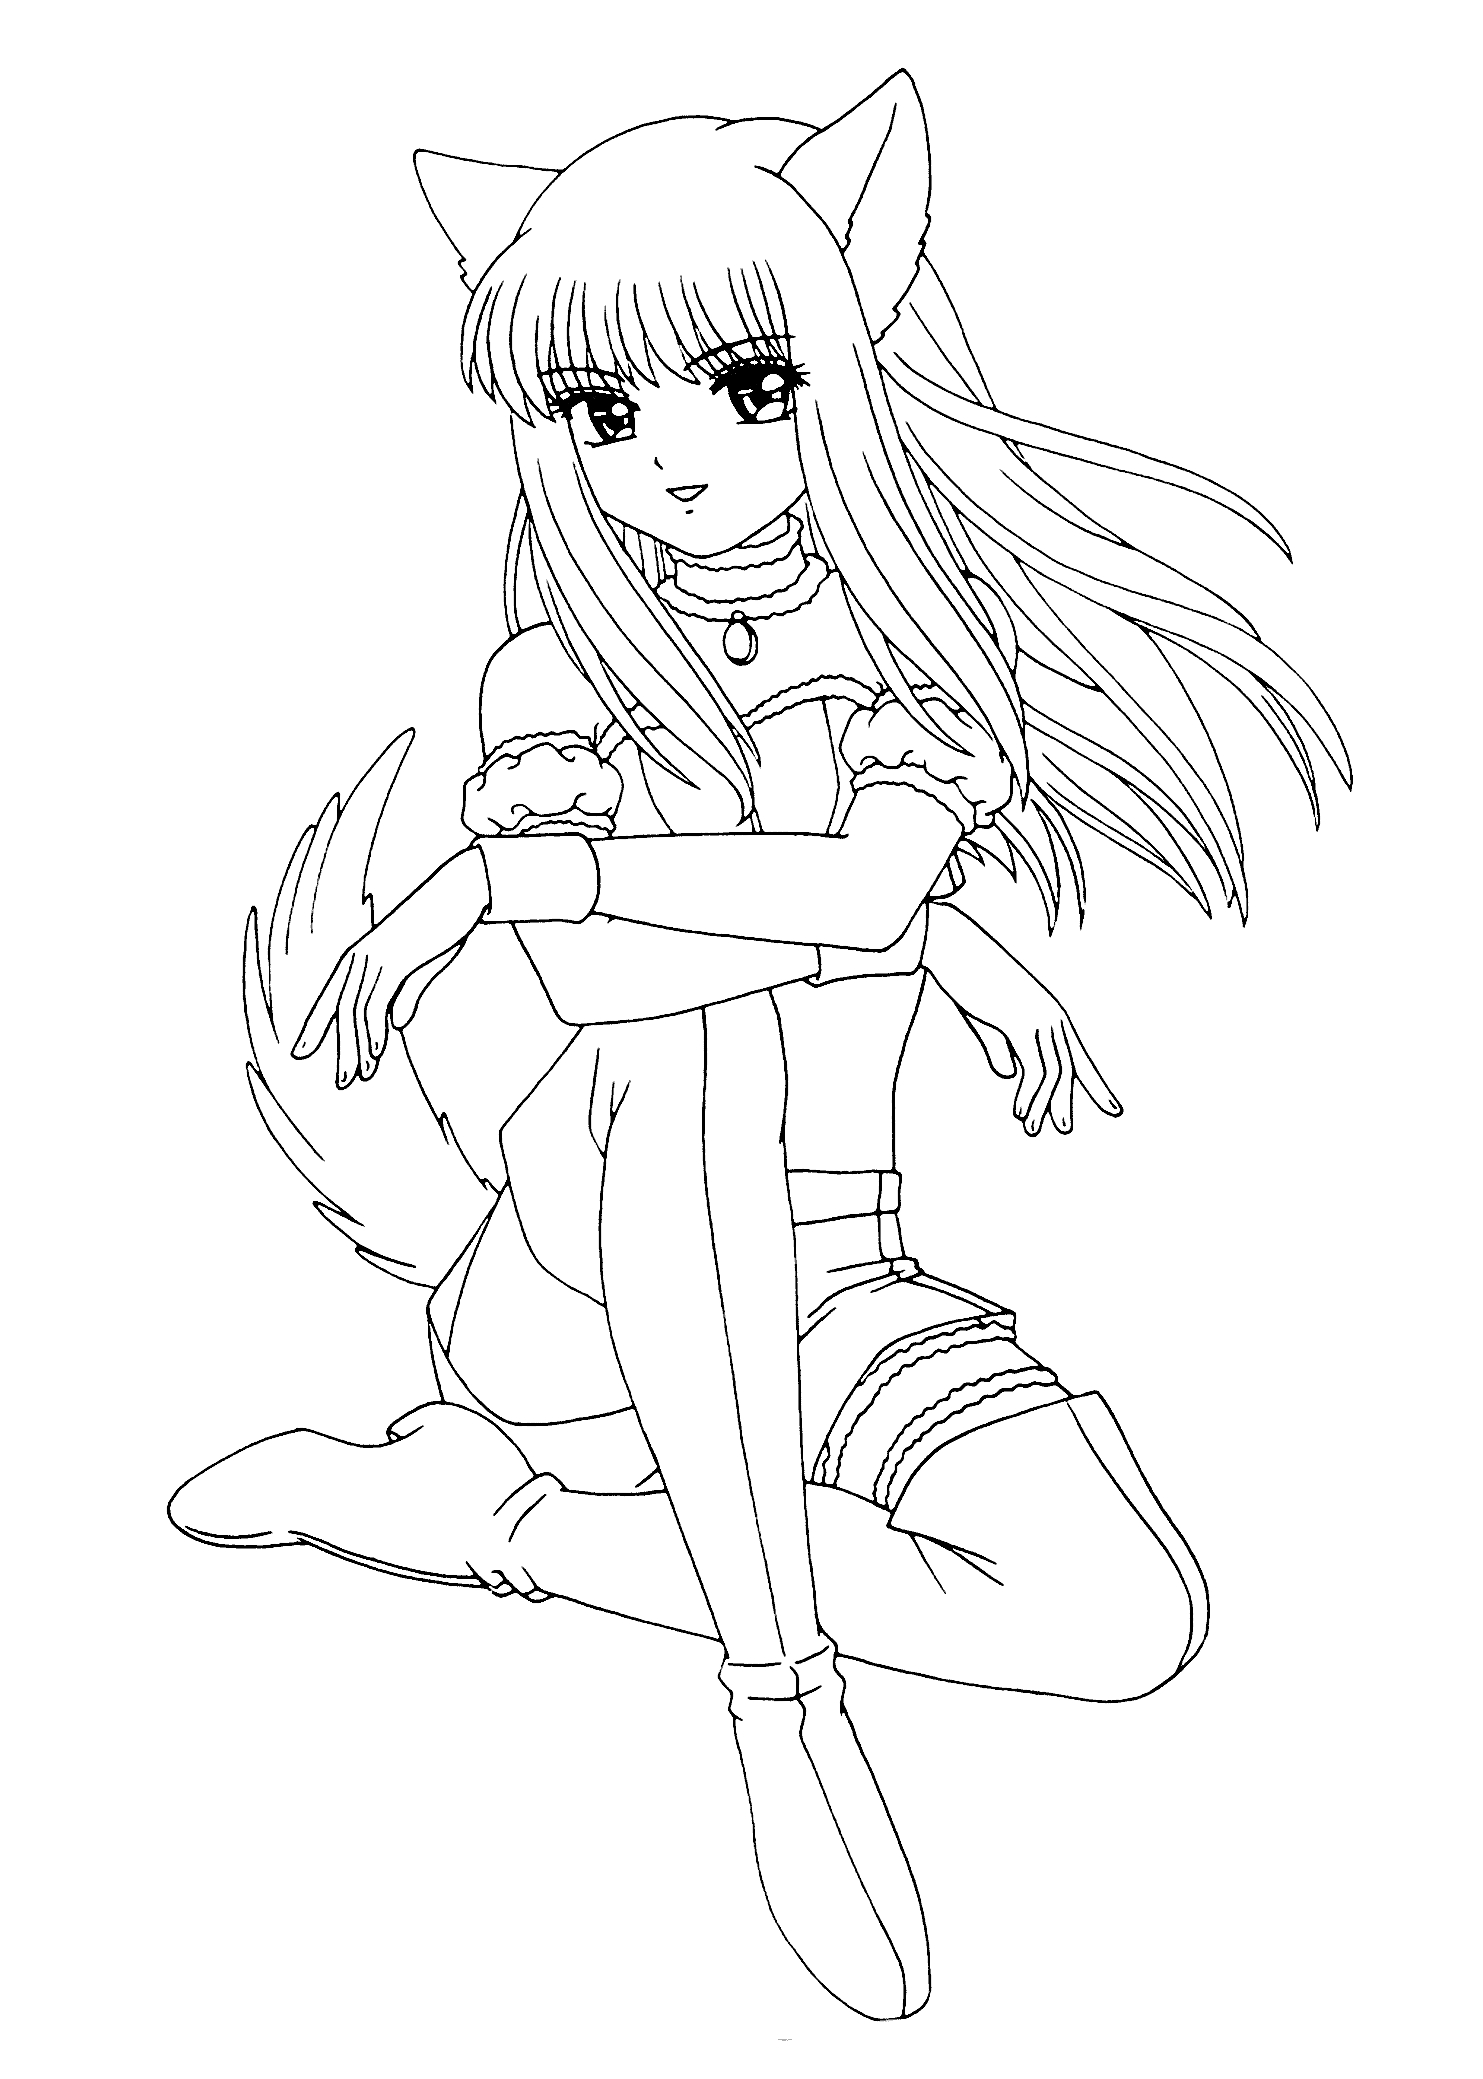 Раскраска Девушка аниме с кошачьими ушами и хвостом, сидящая с расслабленными руками, длинные волосы, нога на ногу